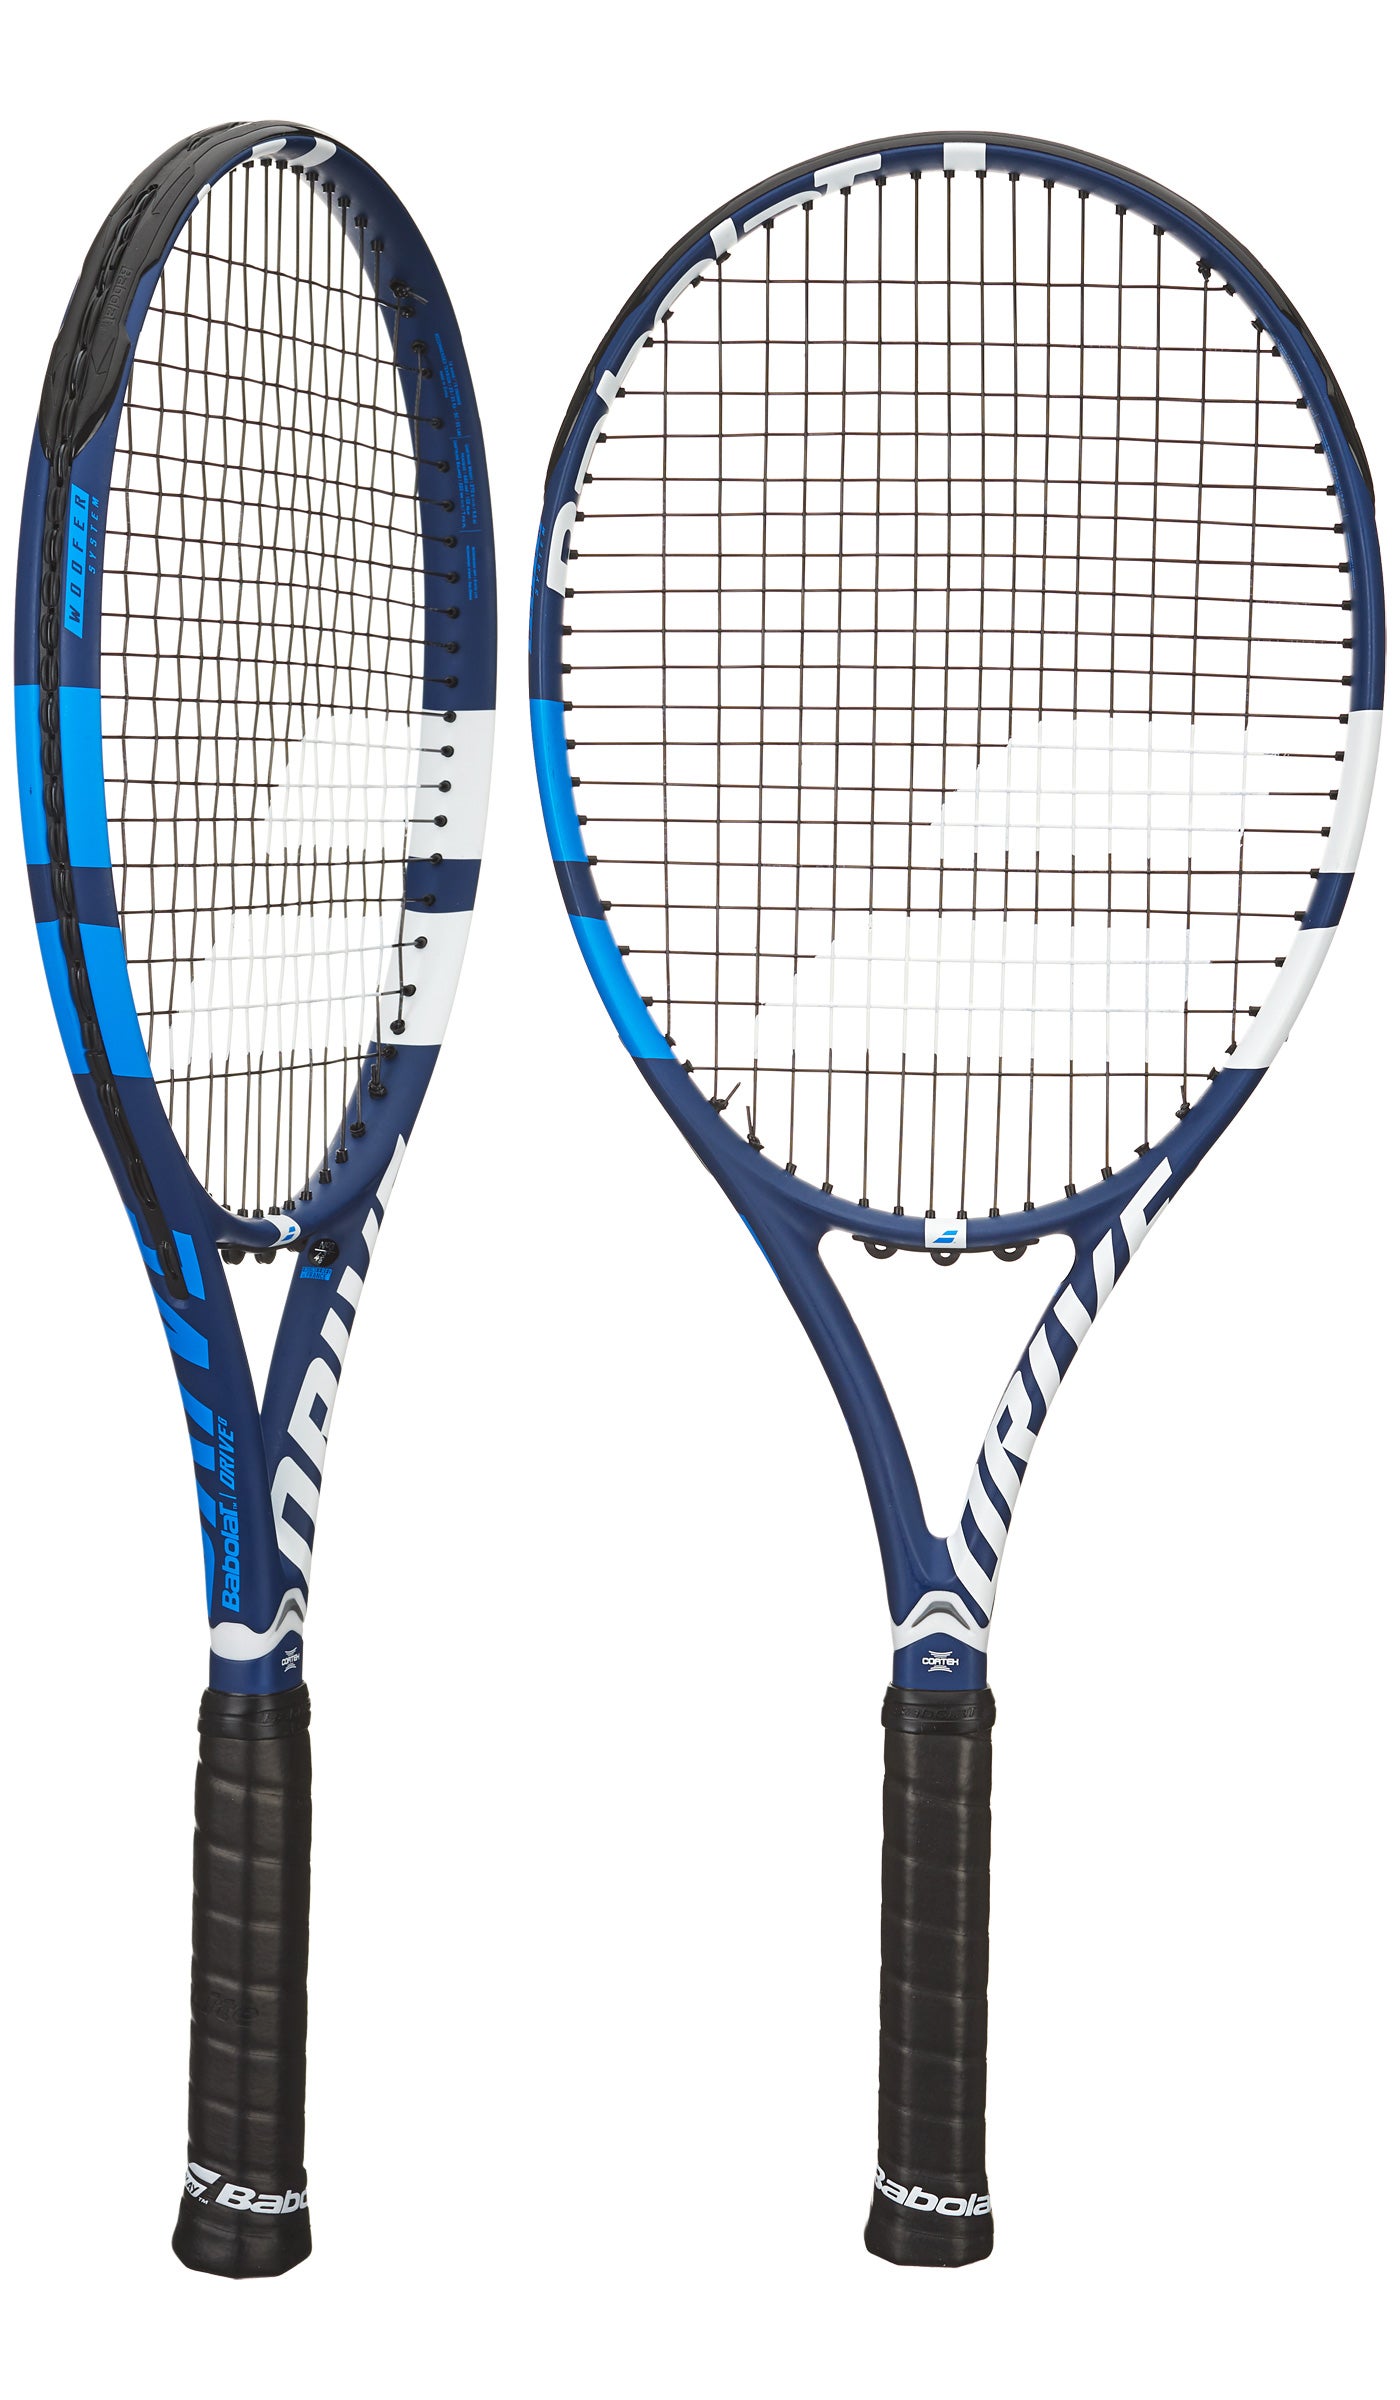 Babolat Drive G Tennis Racquet Racket Grip 2 4 1/4 Cortex Woofer Technology 